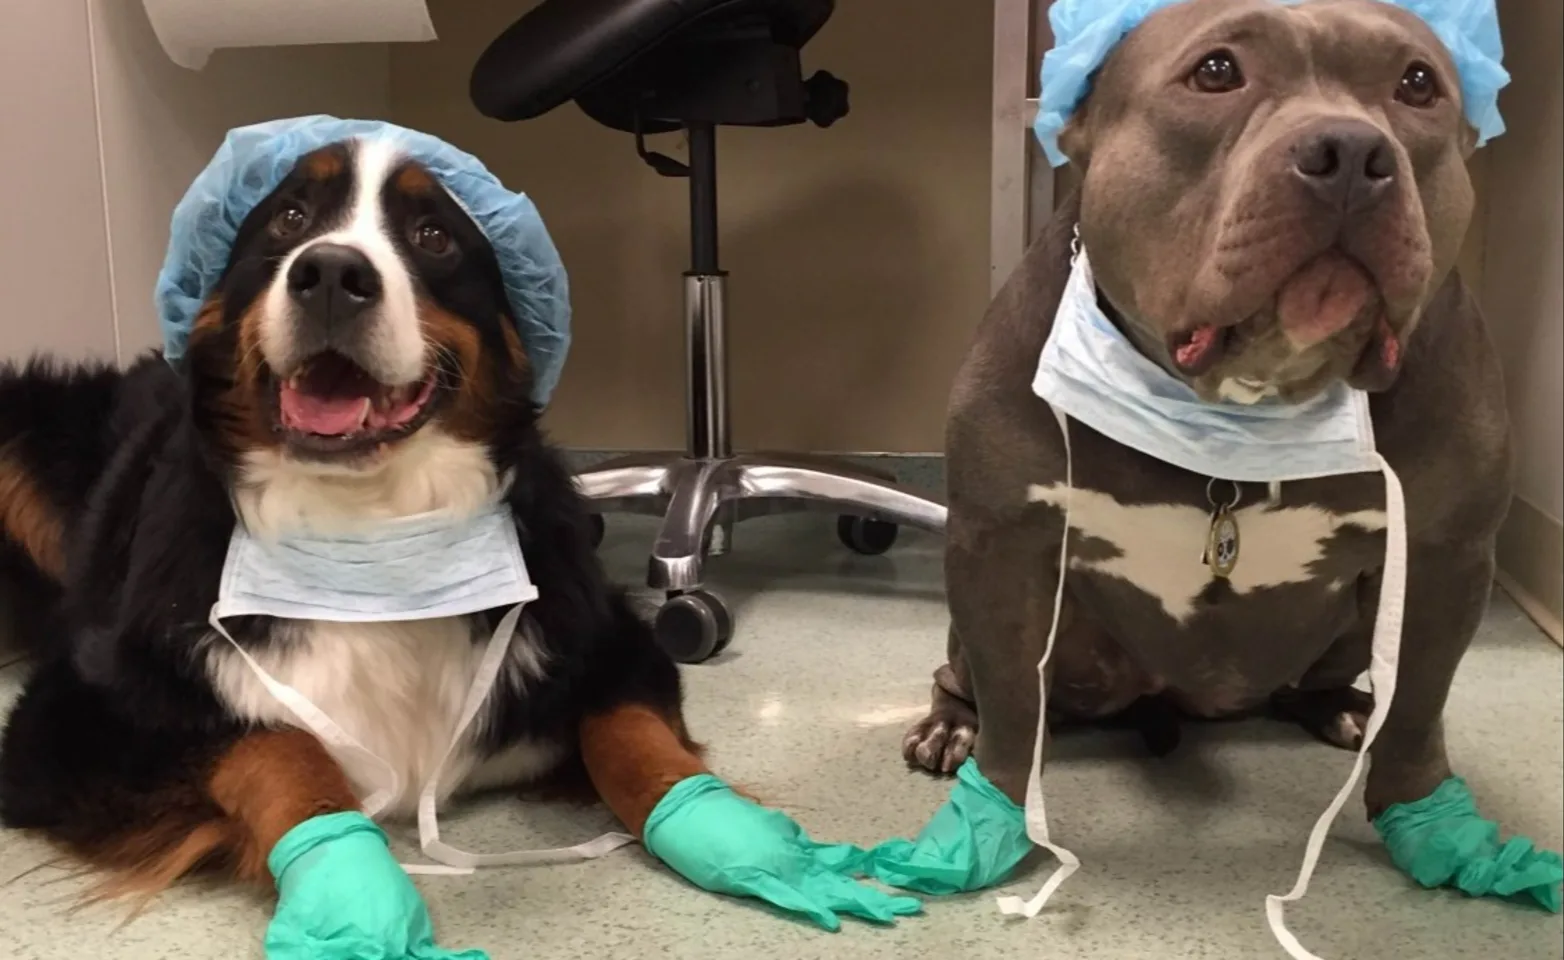 Dogs in hospital apparel gear